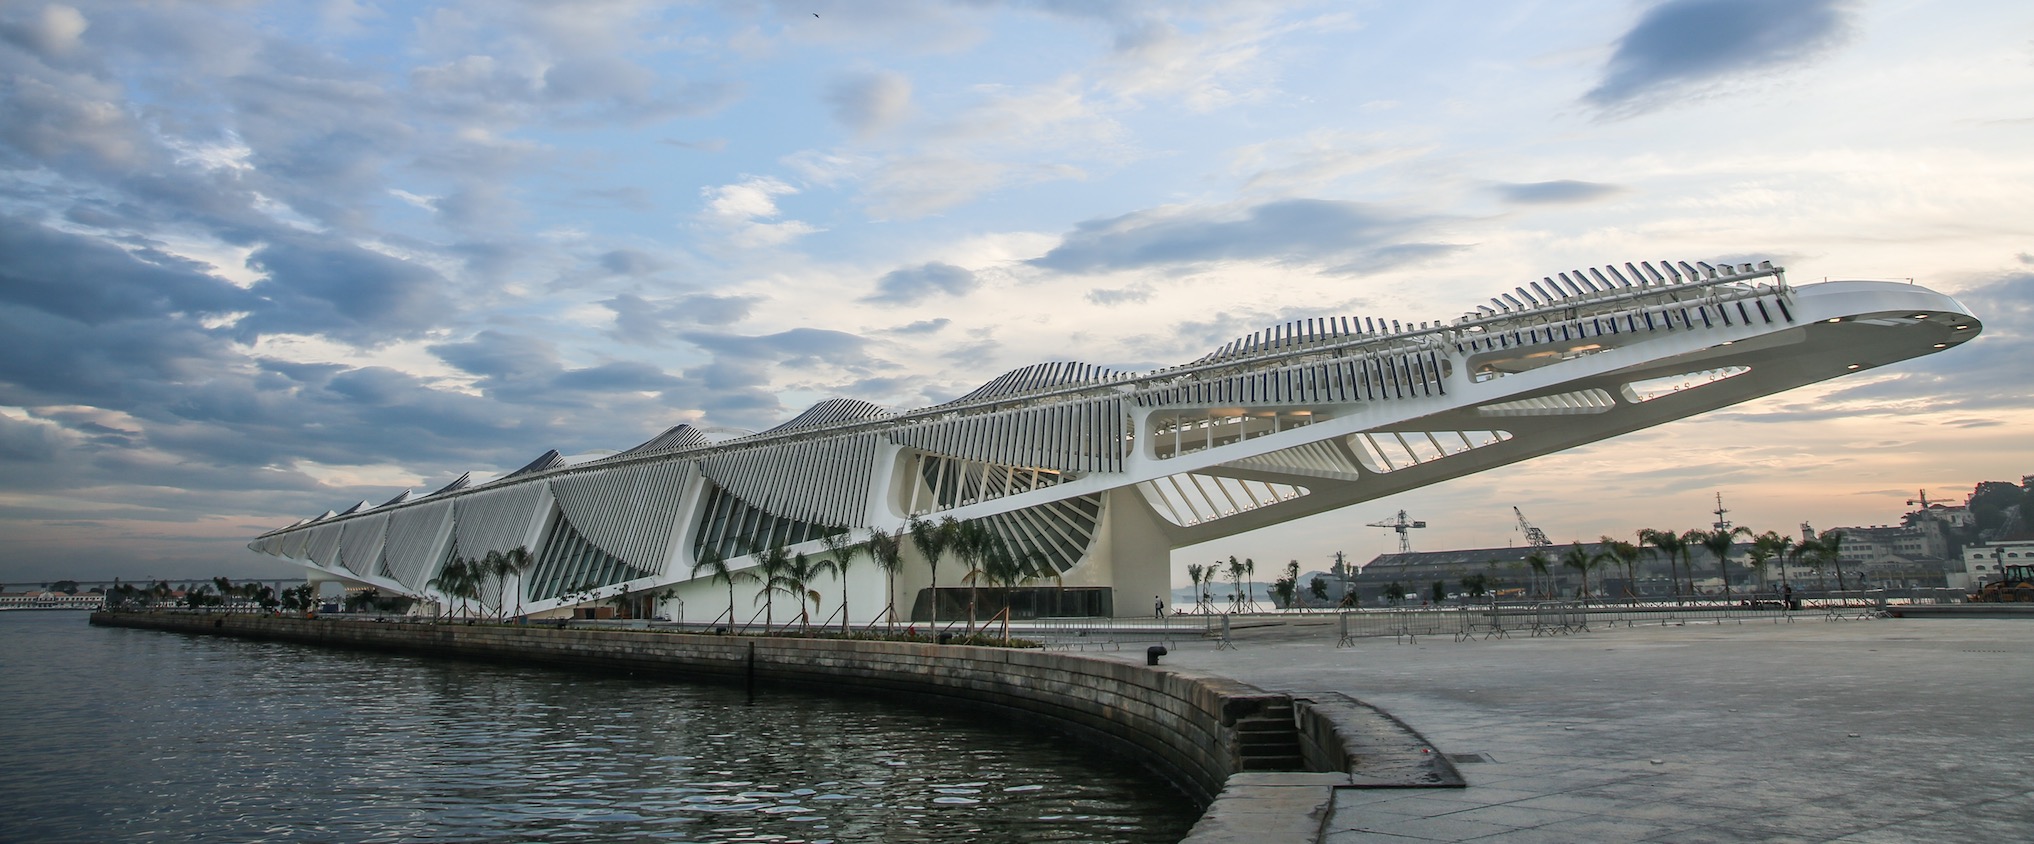 El Museu do Amanhã obté el Premi MIPIM al l’edifici més innovador